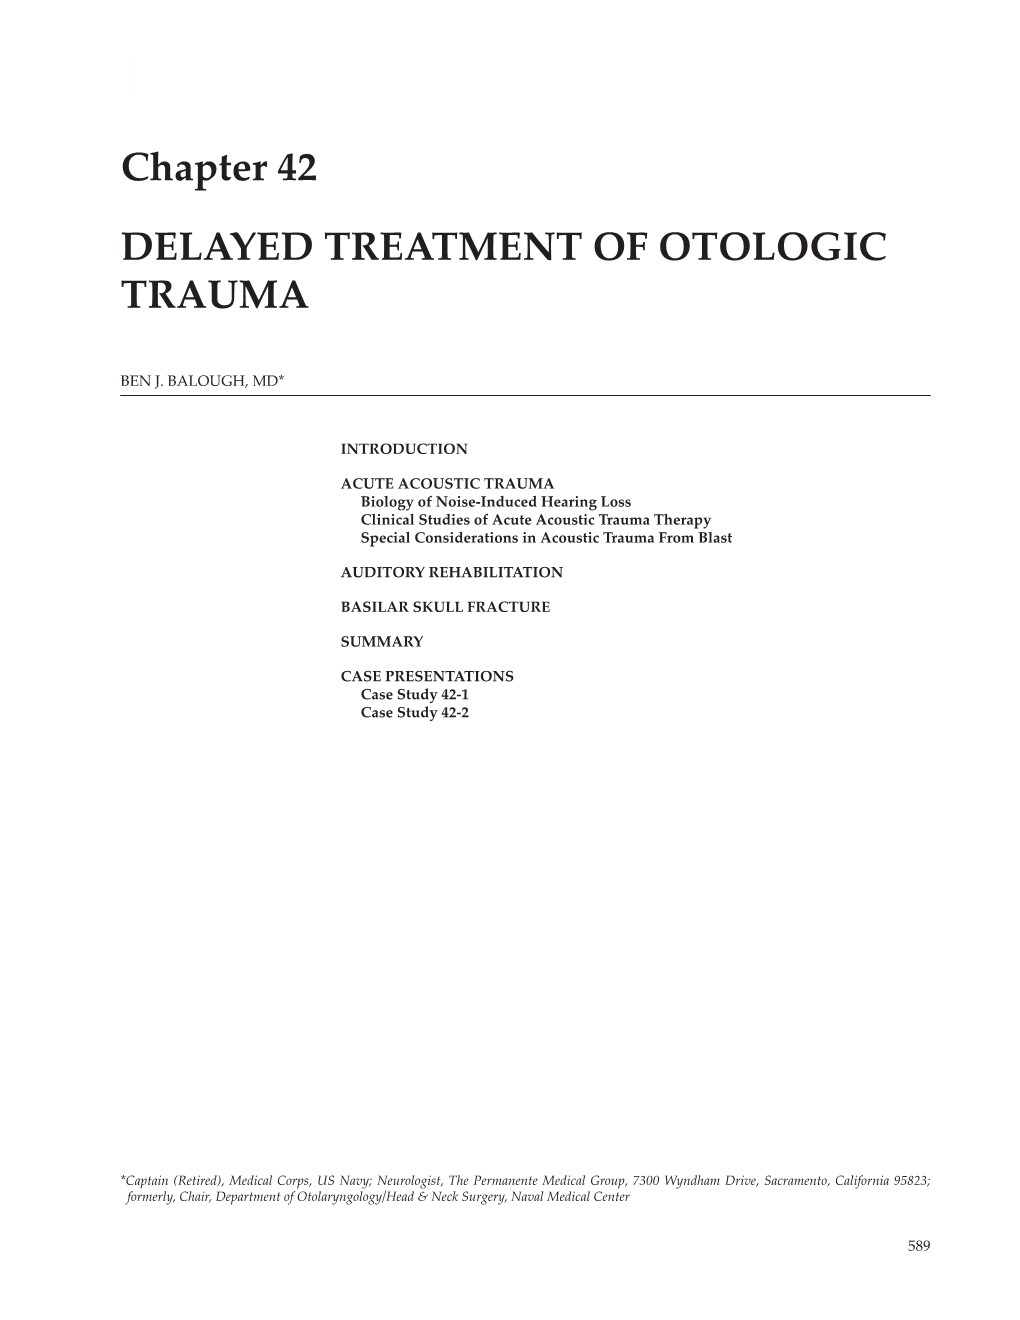 Chapter 42 DELAYED TREATMENT of OTOLOGIC TRAUMA